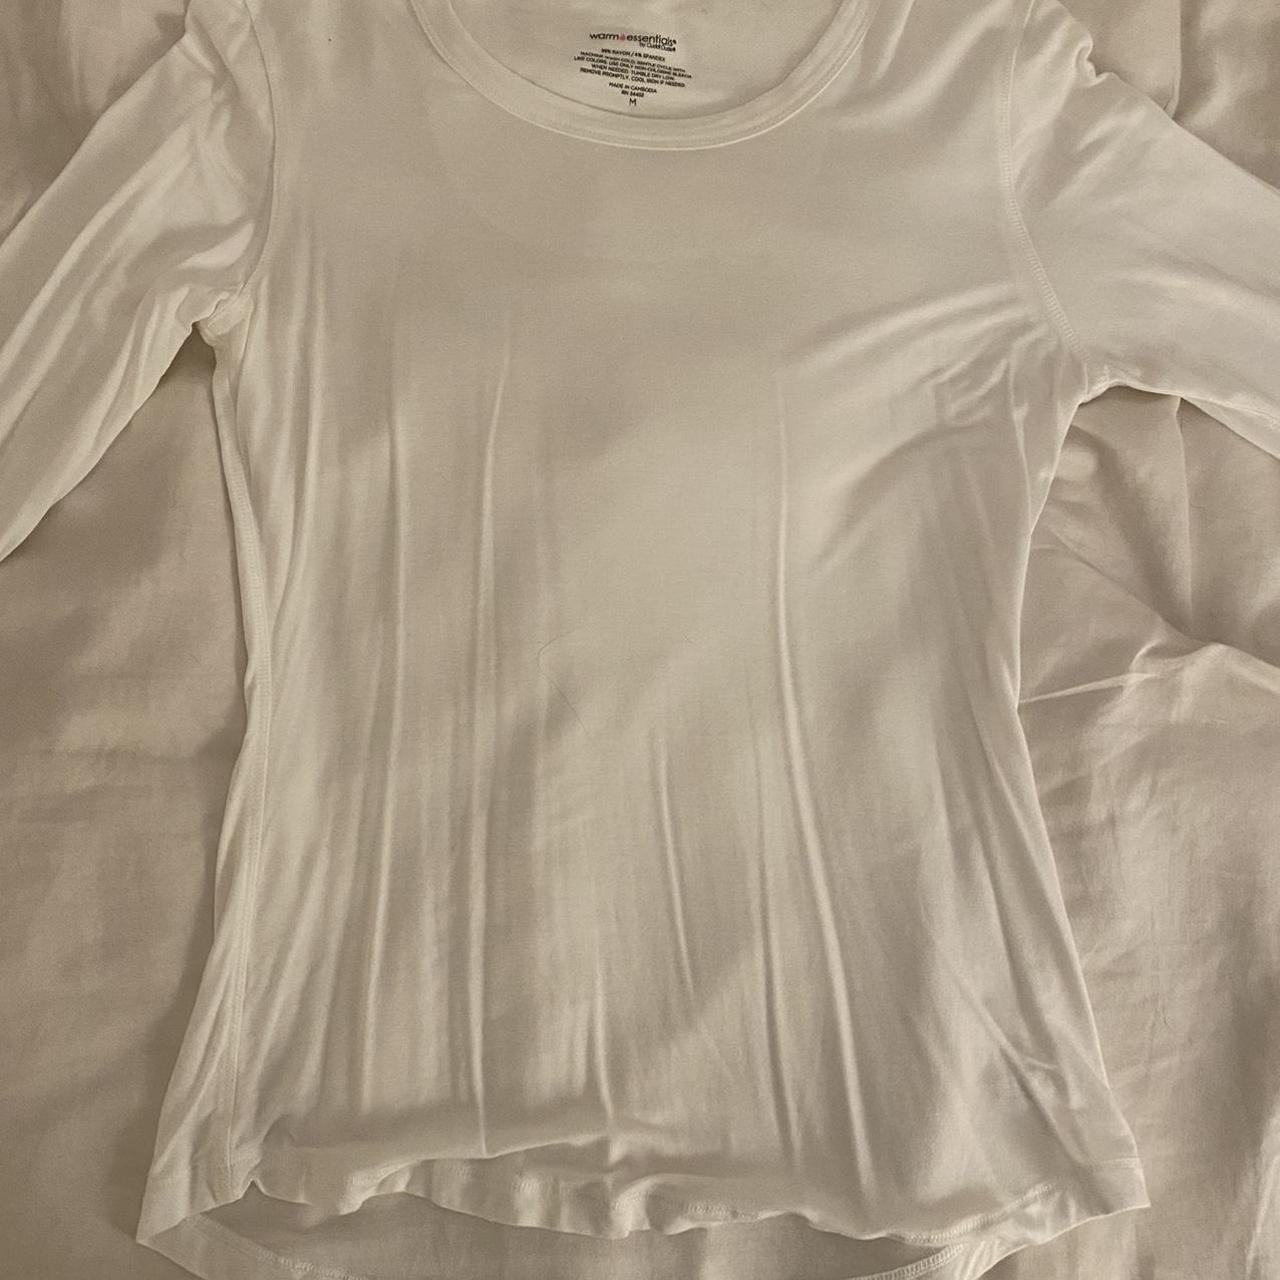 Cuddl Duds Women's White and Cream Vest-undershirts | Depop